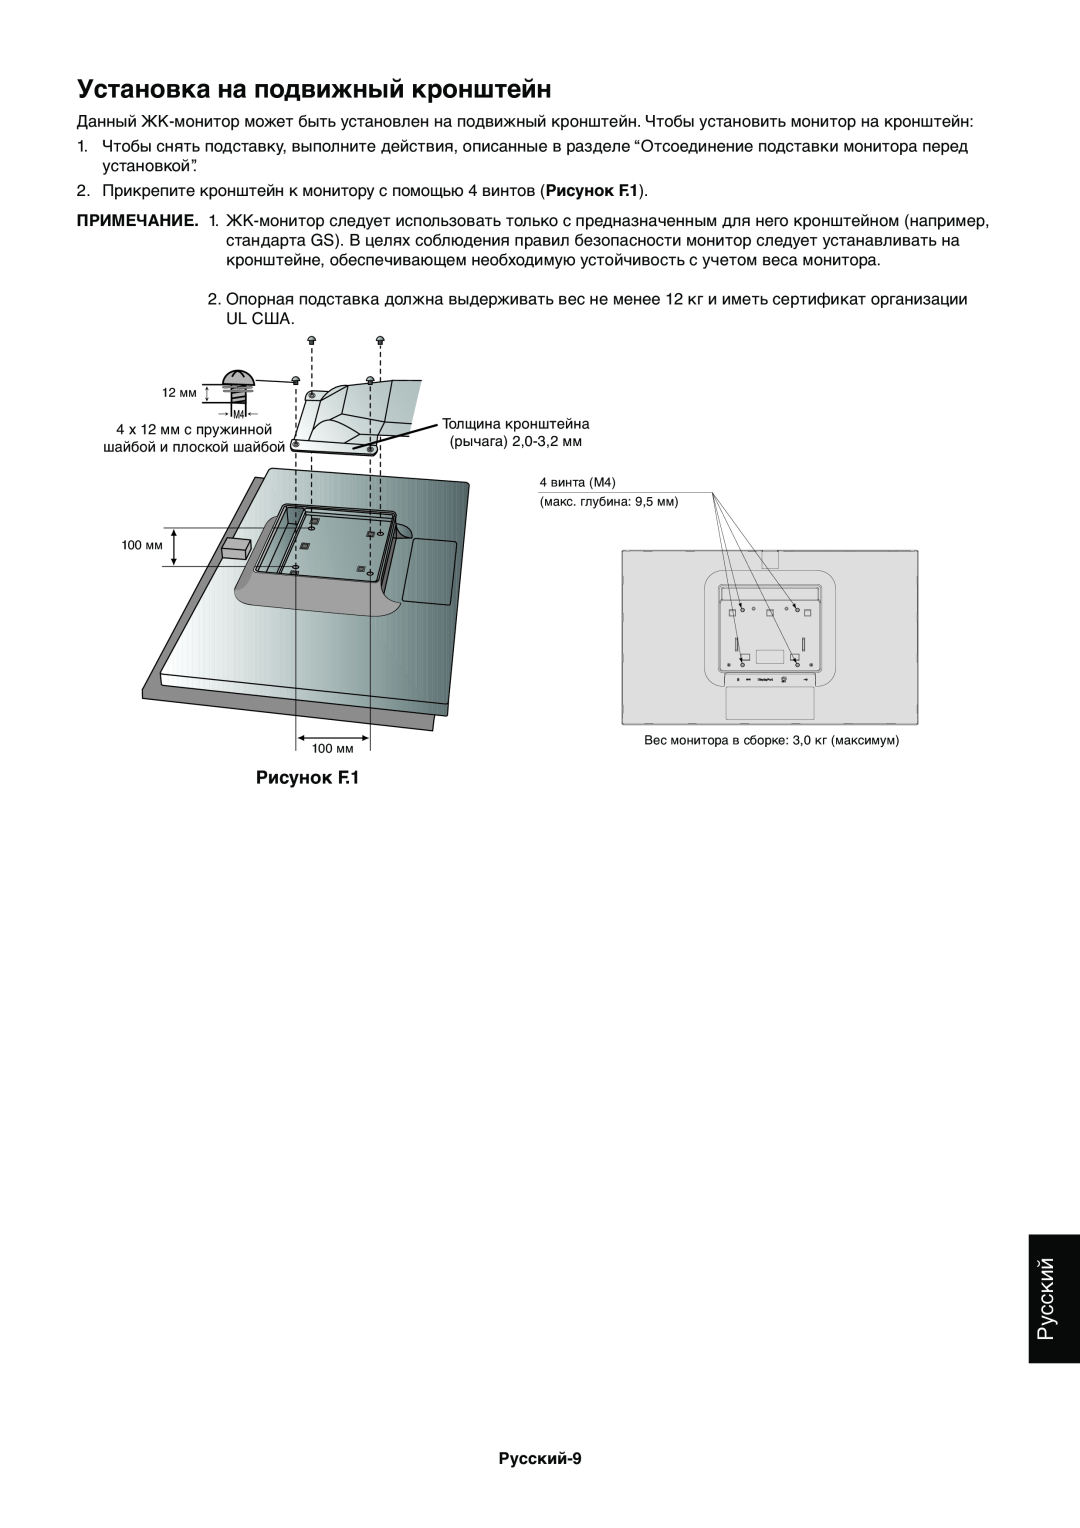 NEC EX231WP manual Установка на подвижный кронштейн, Русский, Рисунок F.1 